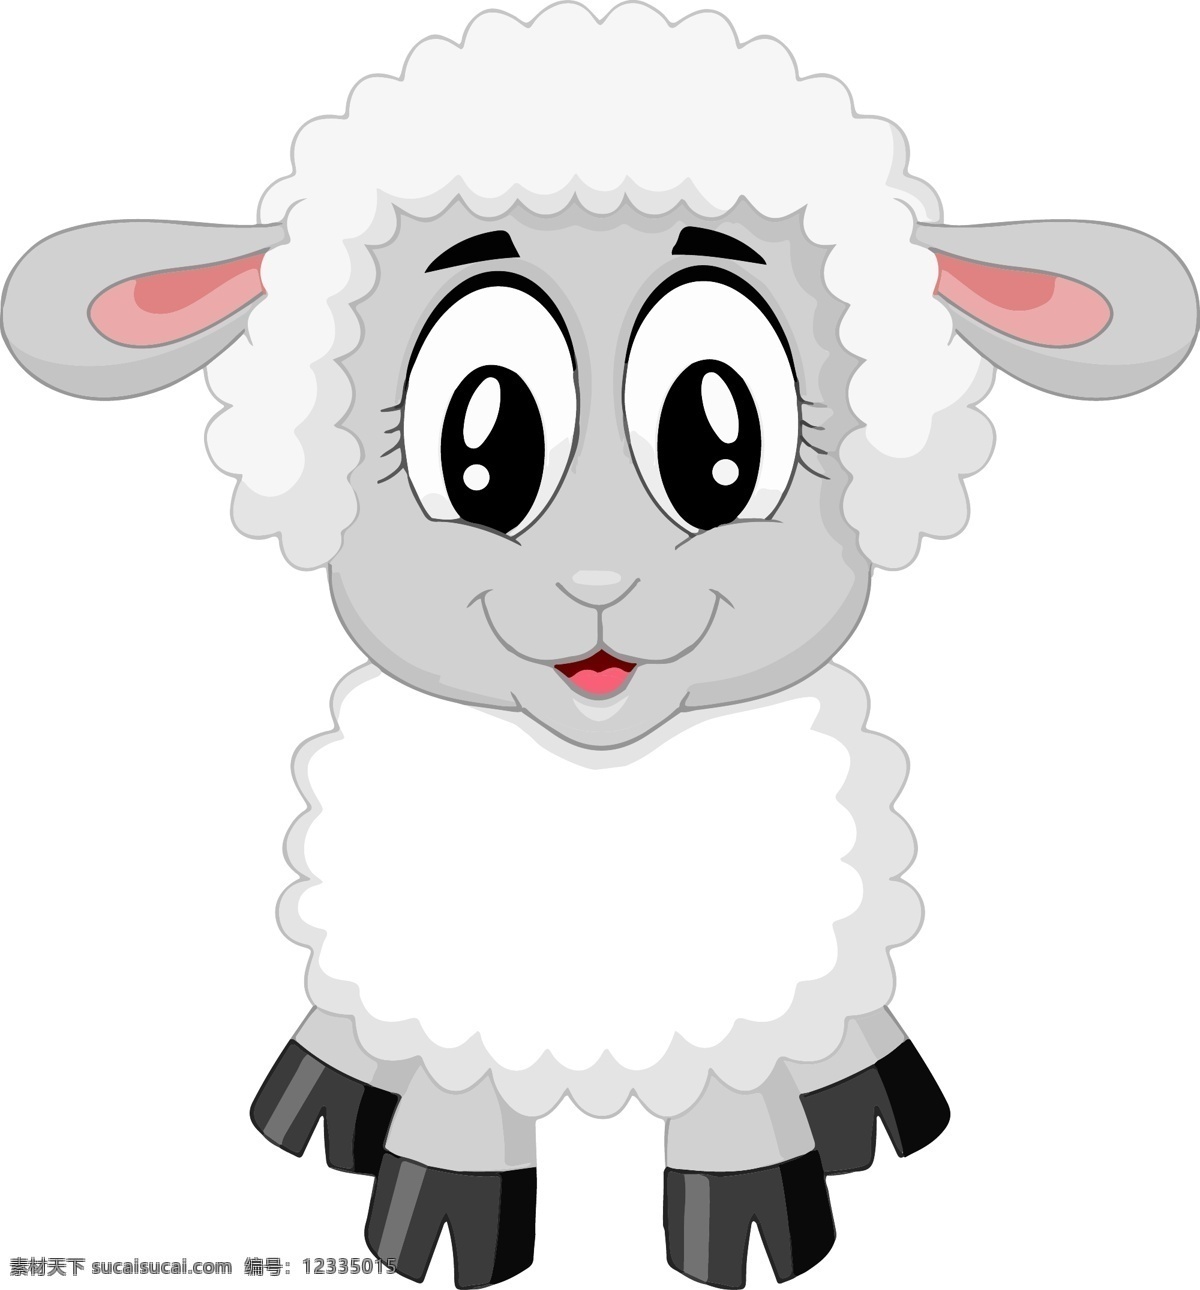 绵羊矢量素材 羊肉 羊 可爱 农场 动物 婴儿 卡通 生物世界 家禽家畜